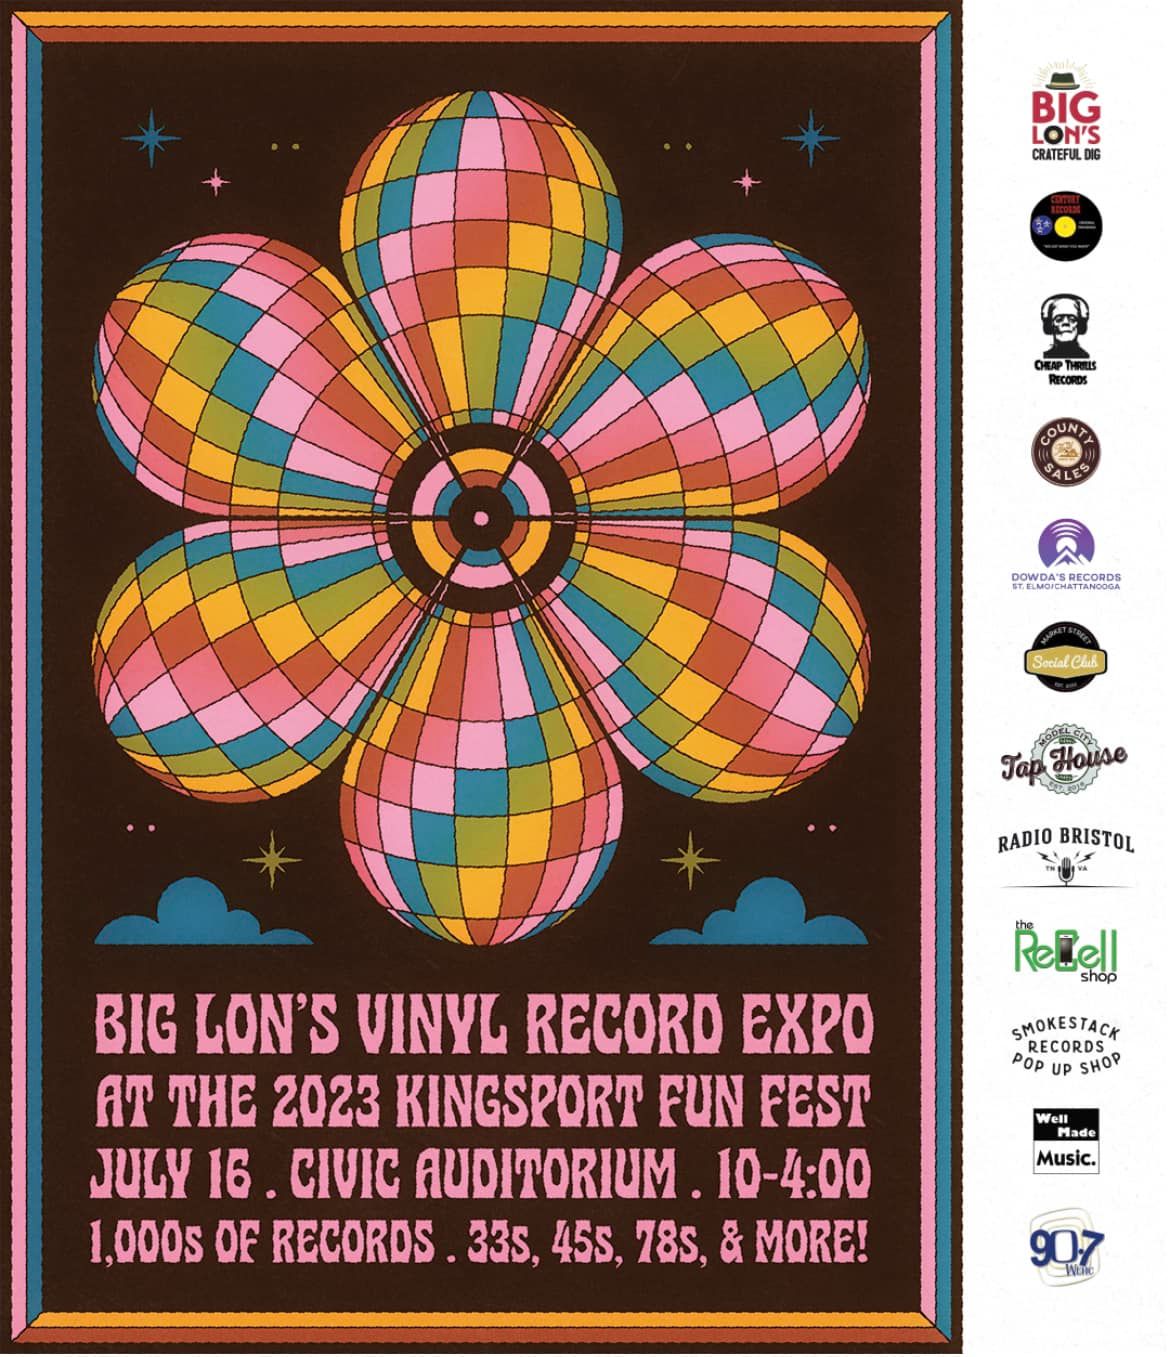 Big Lon's Vinyl Record Expo